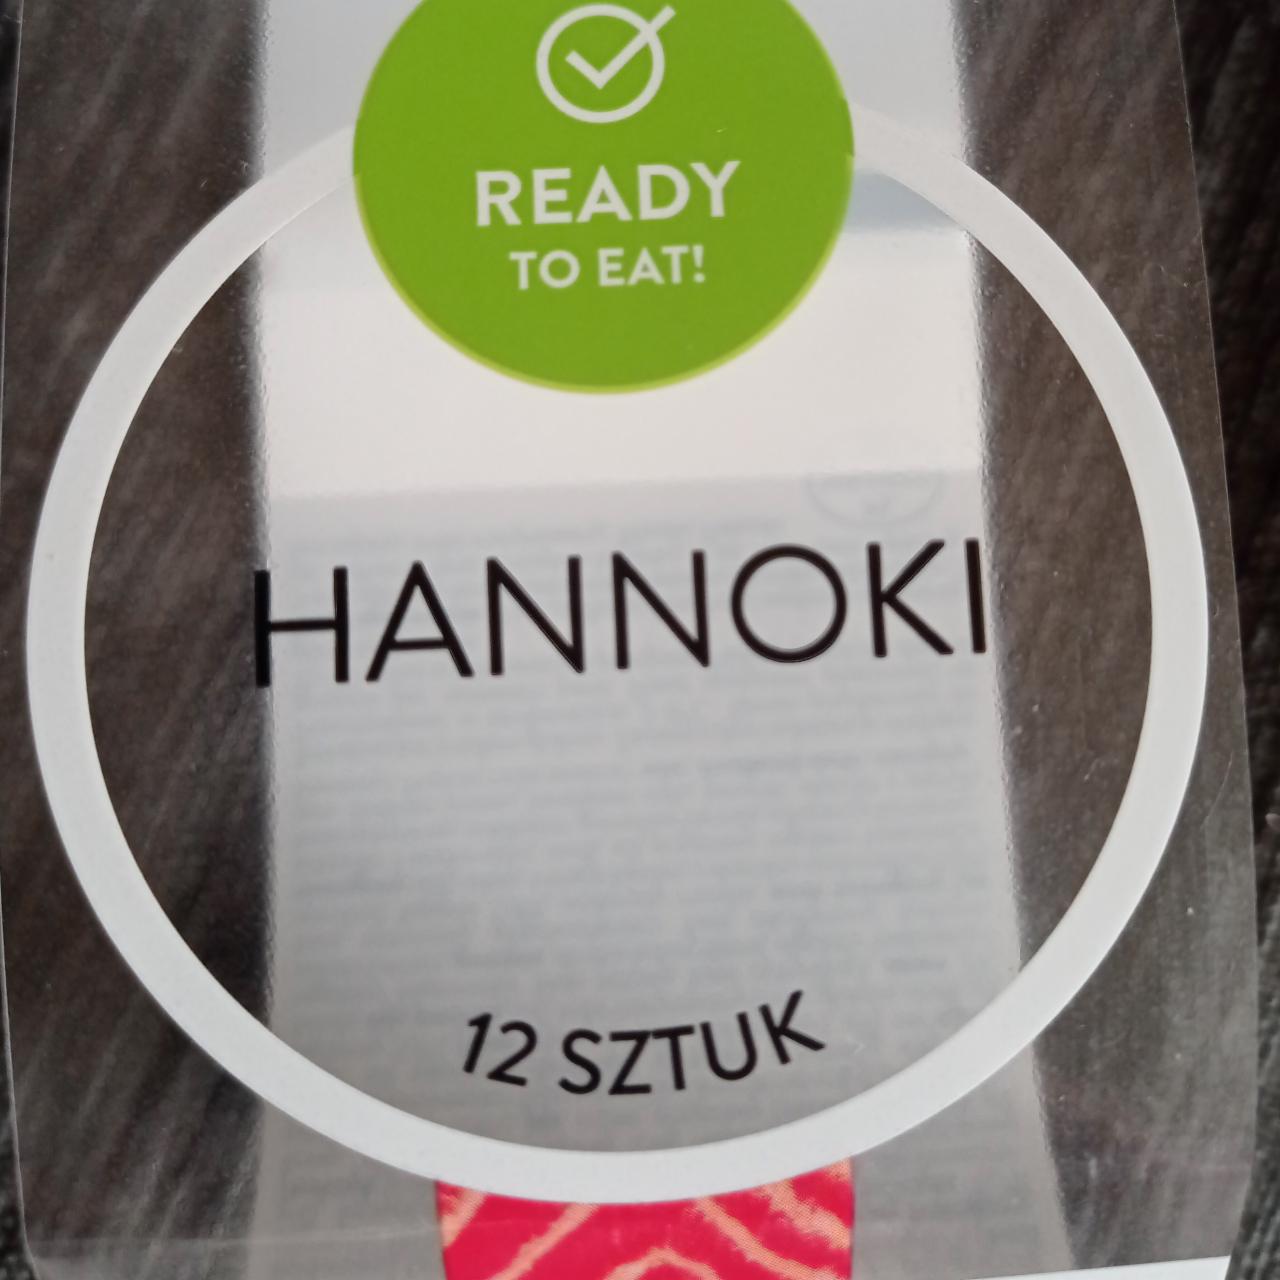 Zdjęcia - sushi hannoki Ready to eat!